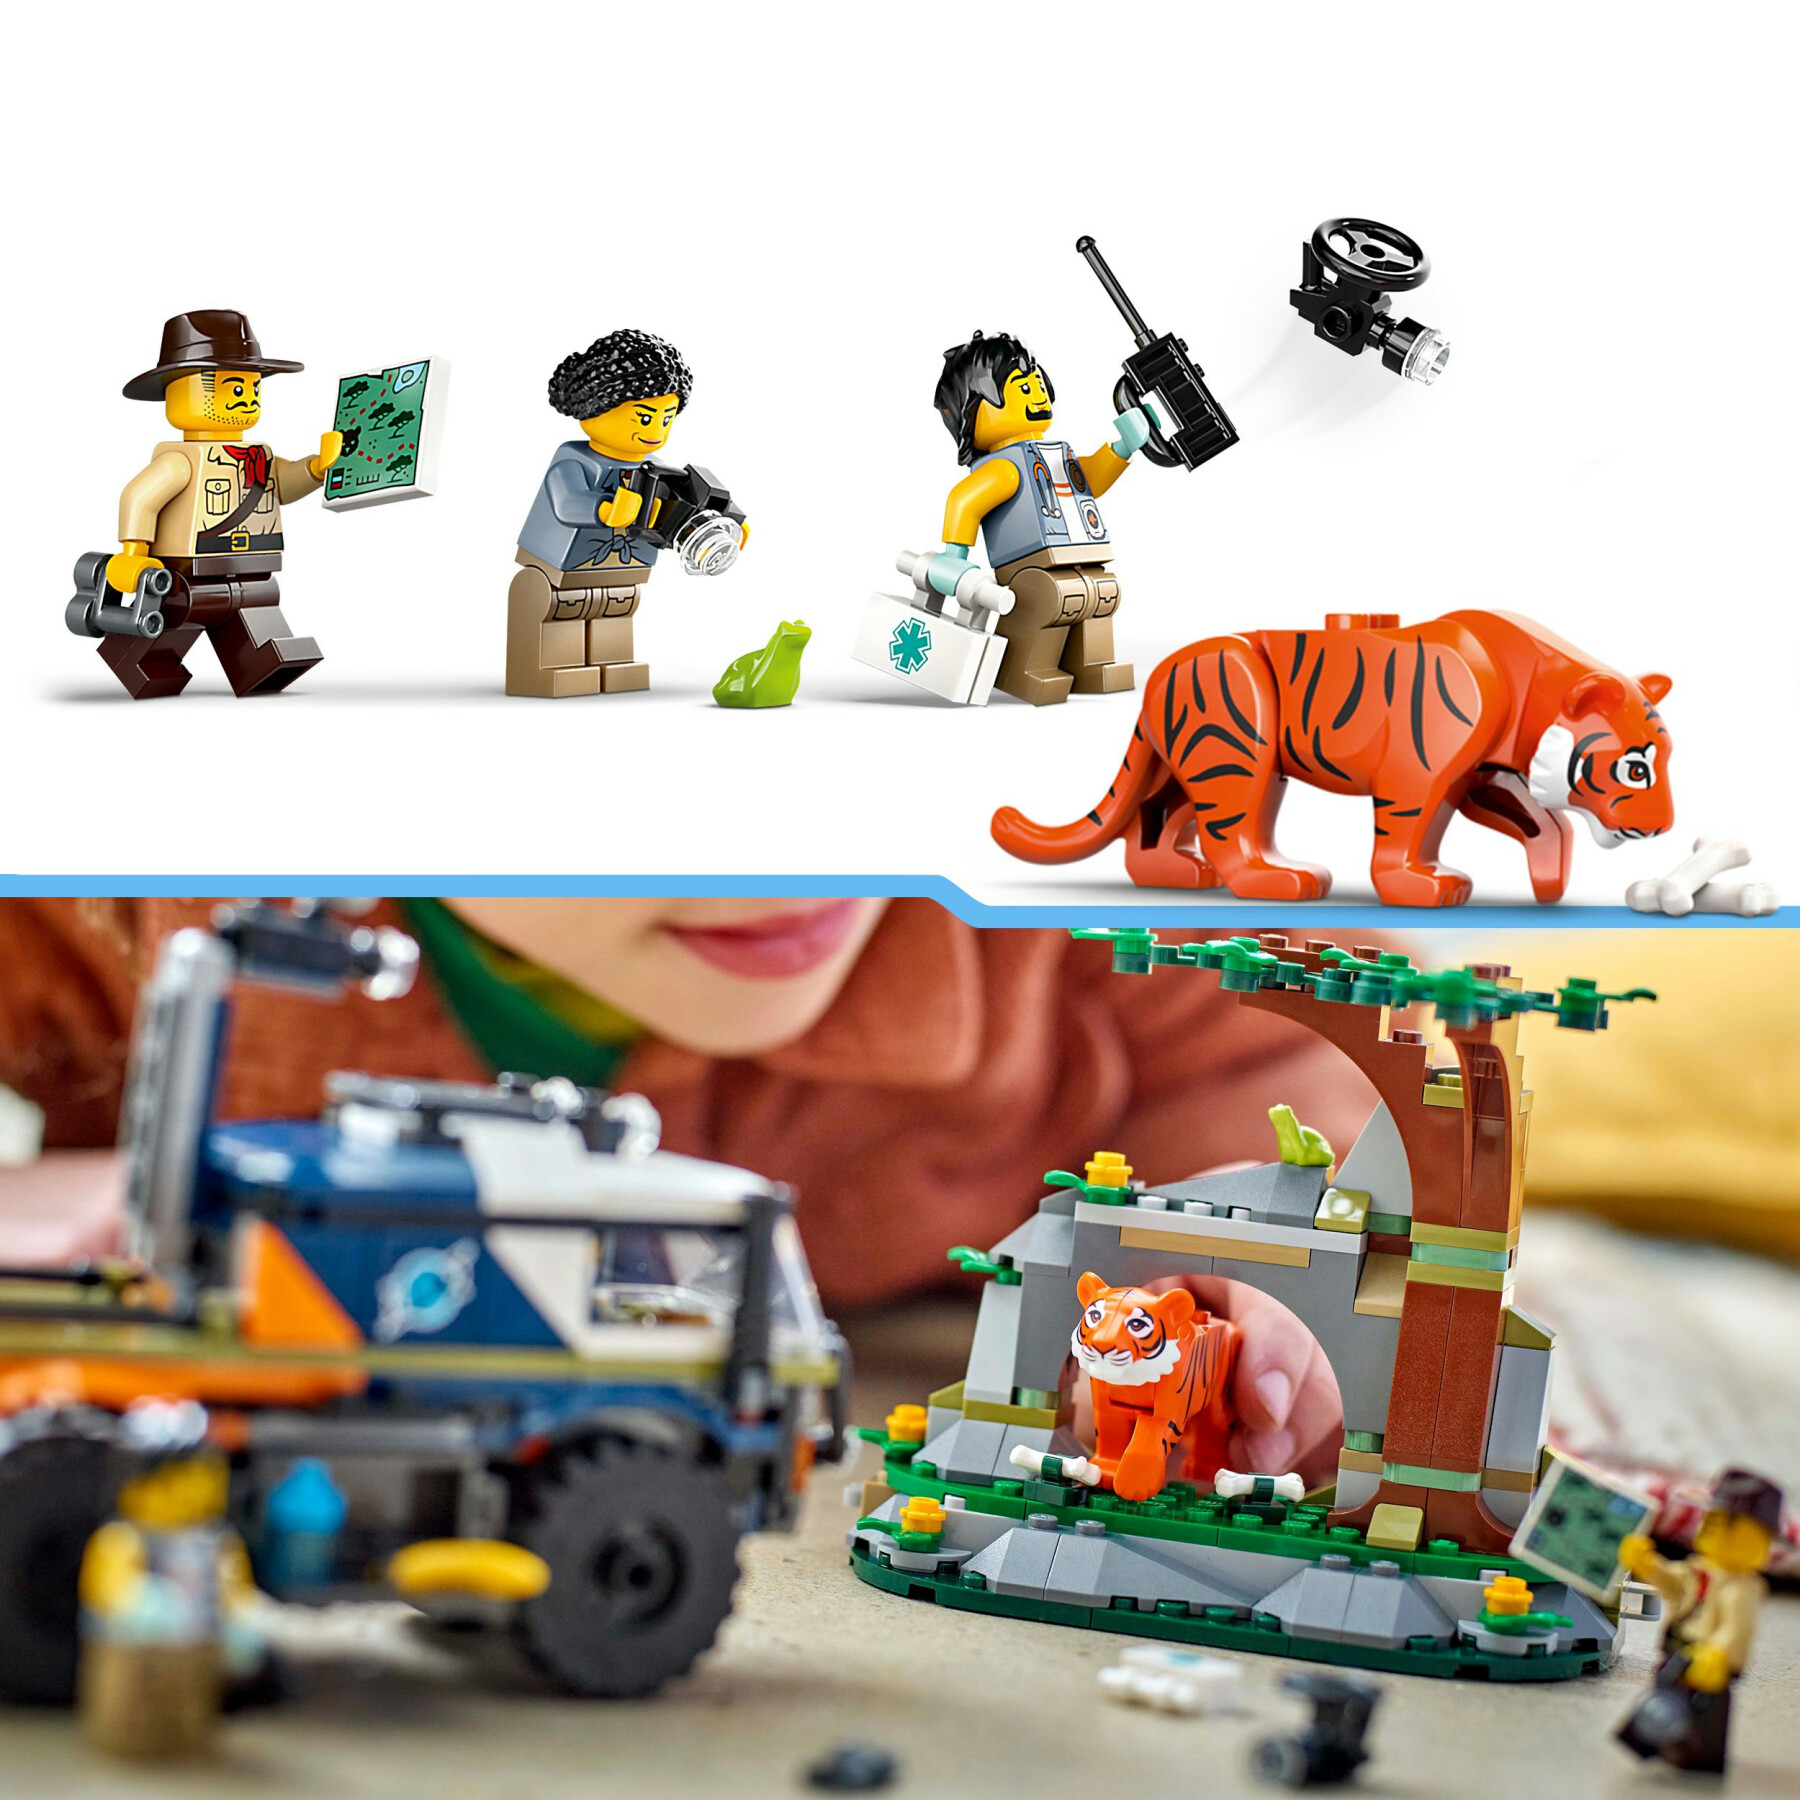 Lego city 60426 fuoristrada dell’esploratore della giungla, camion giocattolo con minifigure e tigre, giochi per bambini 6+ - LEGO CITY